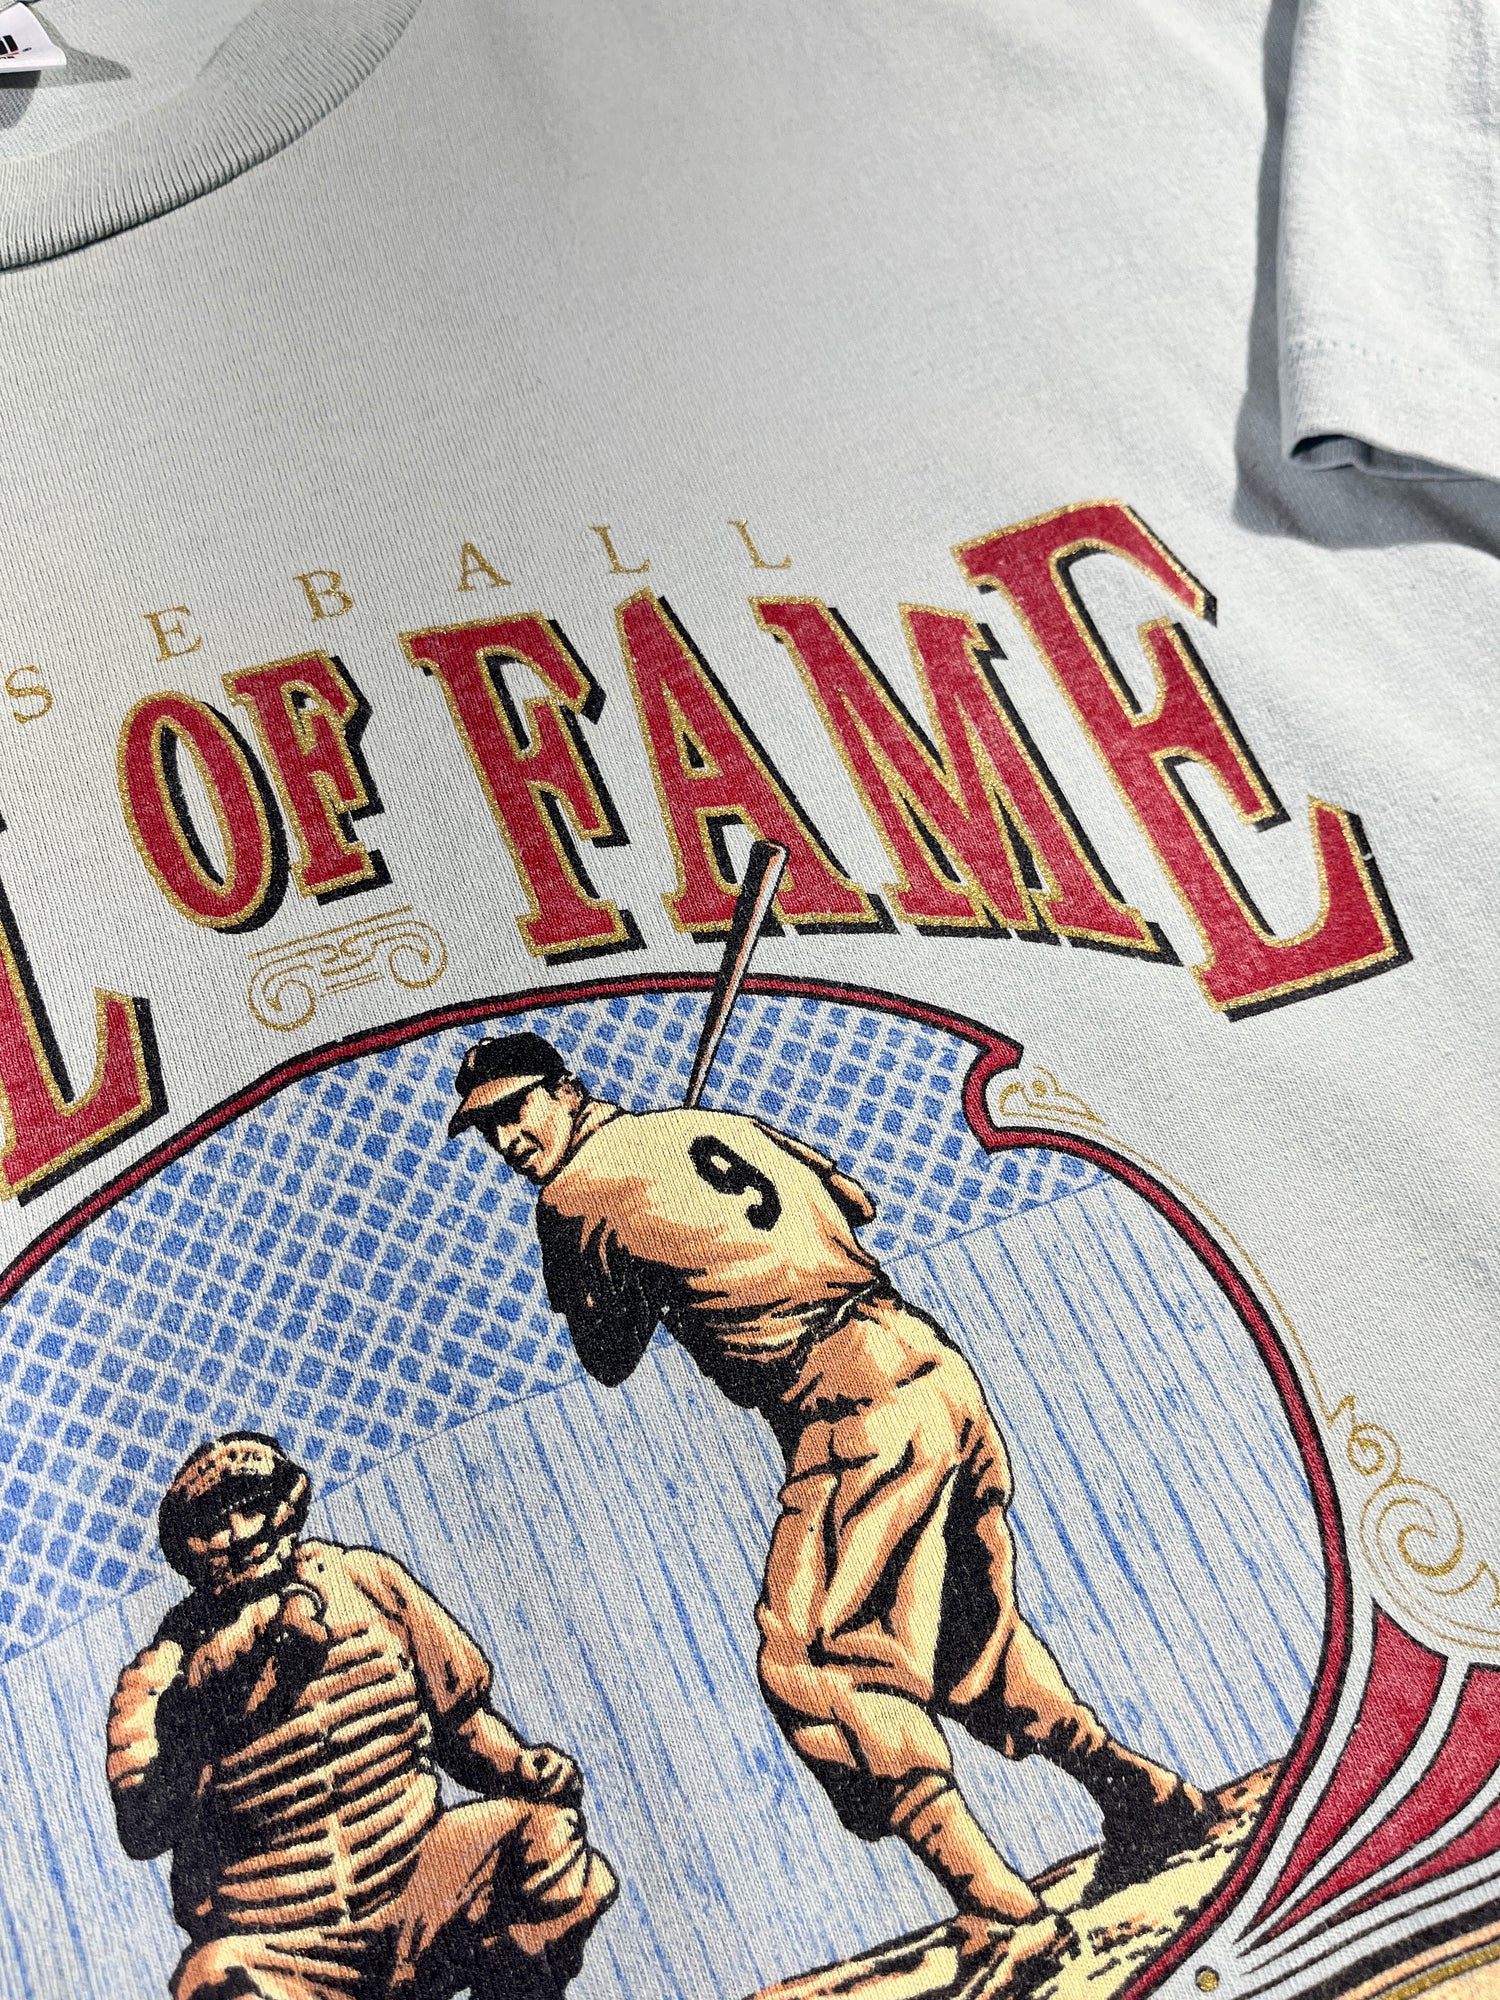 Vintage Royals Jersey Top T-Shirt Baseball Cut Kansas City MLB USA